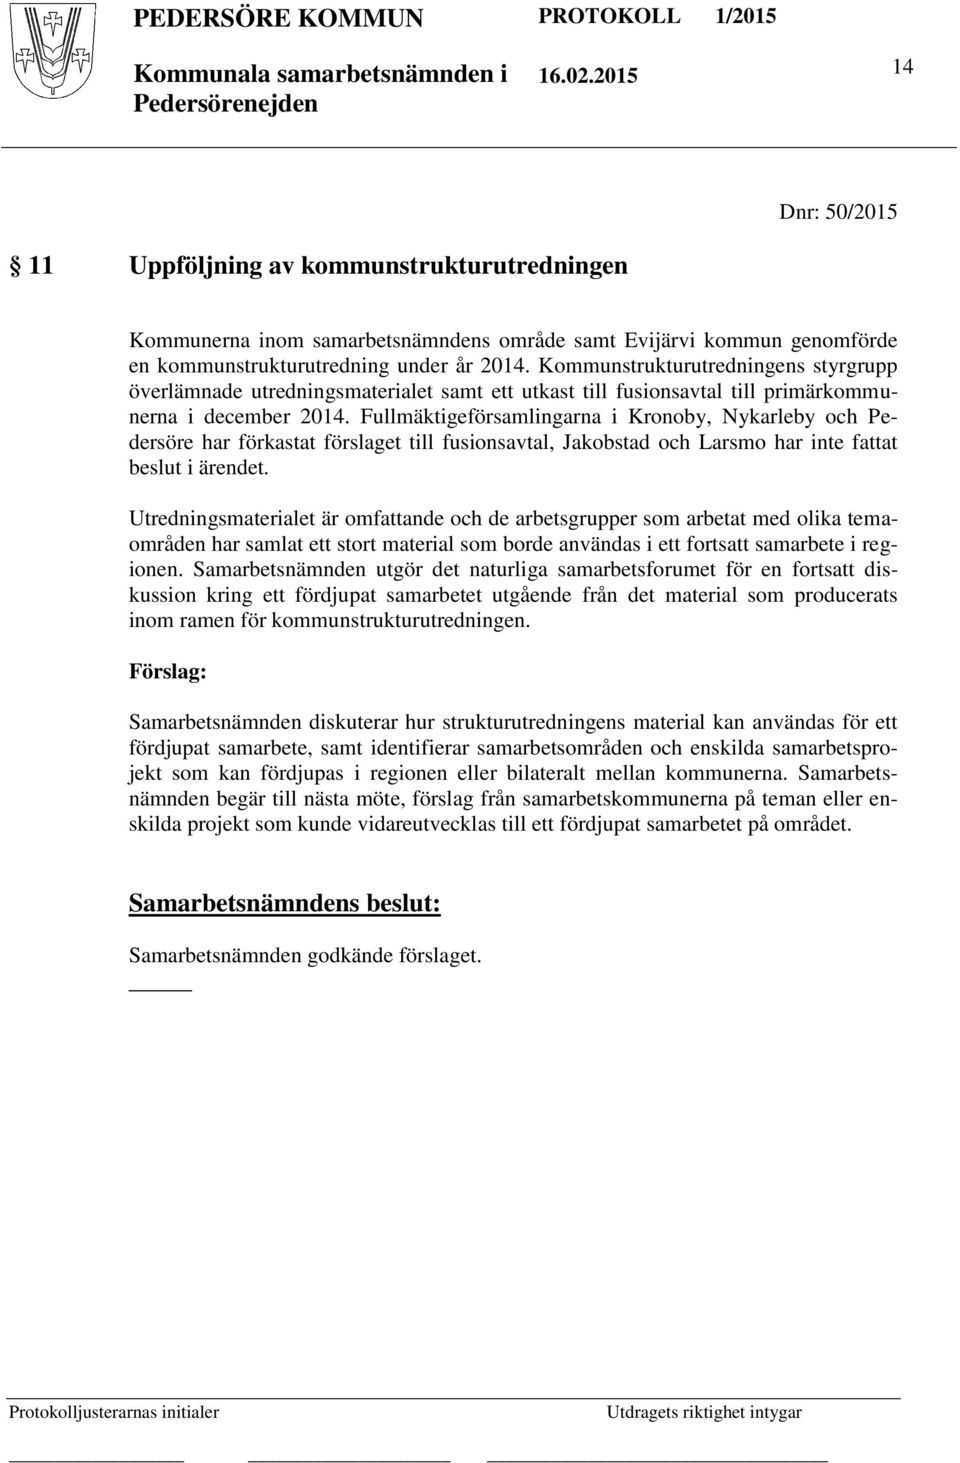 Fullmäktigeförsamlingarna i Kronoby, Nykarleby och Pedersöre har förkastat förslaget till fusionsavtal, Jakobstad och Larsmo har inte fattat beslut i ärendet.